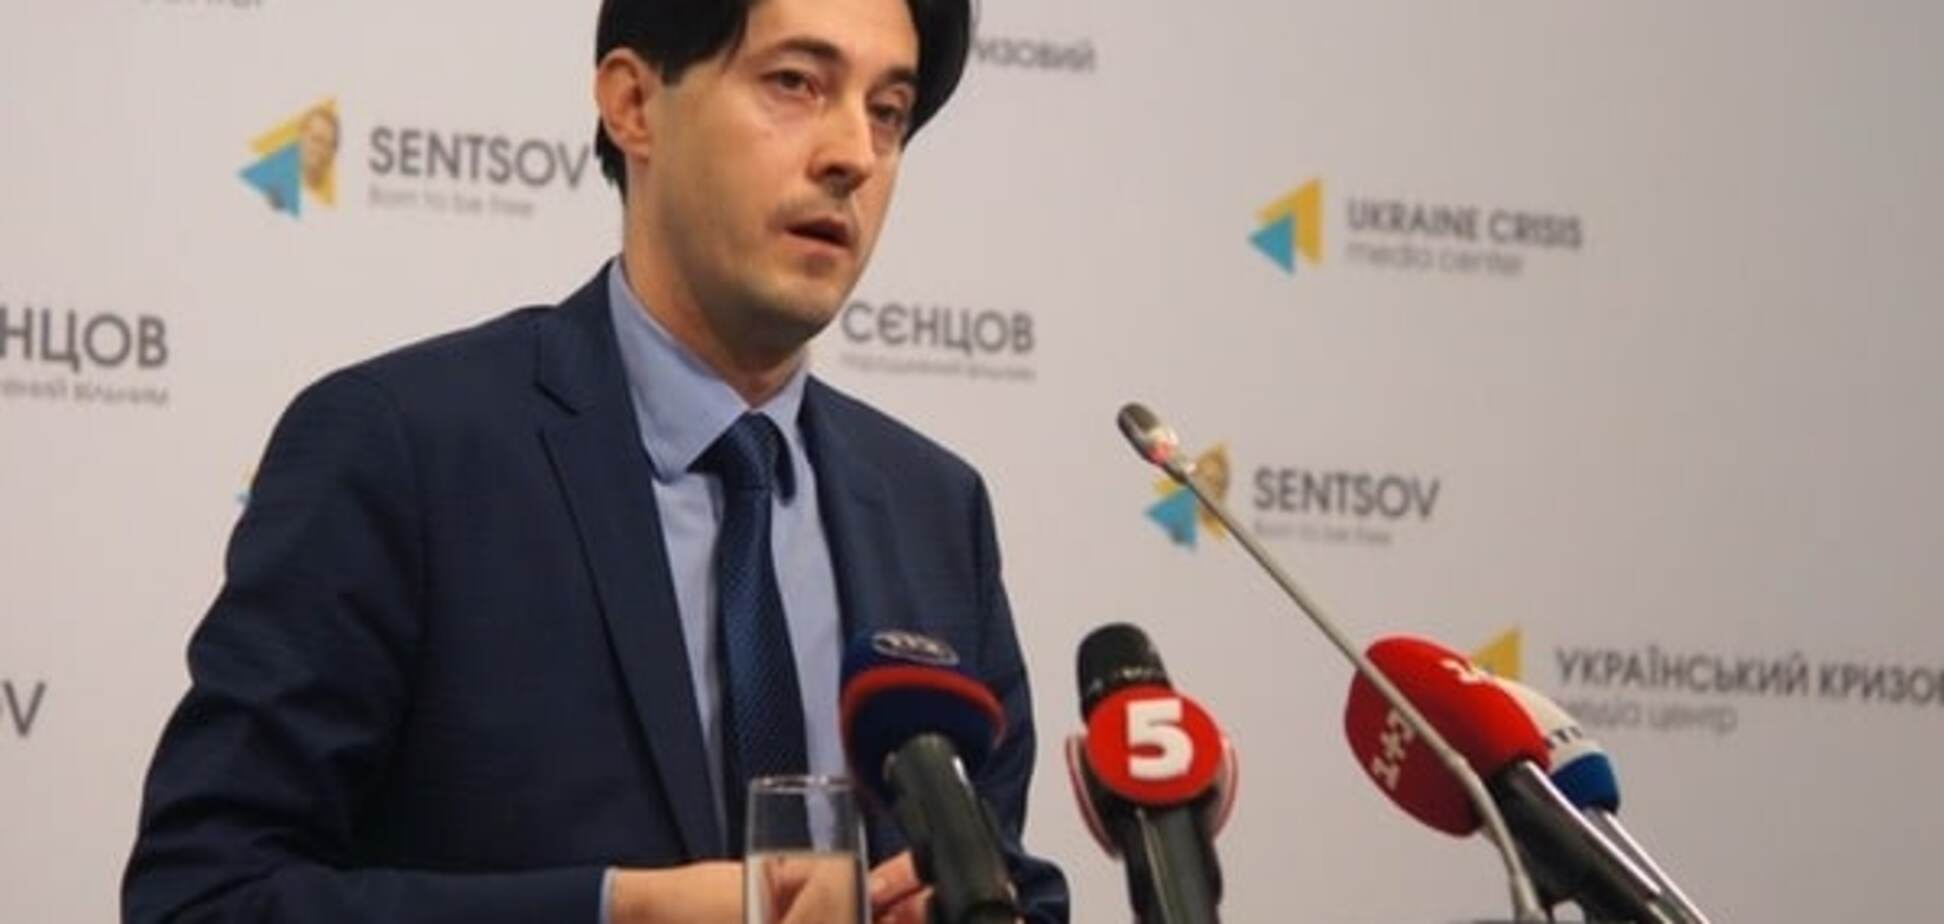 Працювати більше не можу: заступник генпрокурора Касько оголосив про відставку